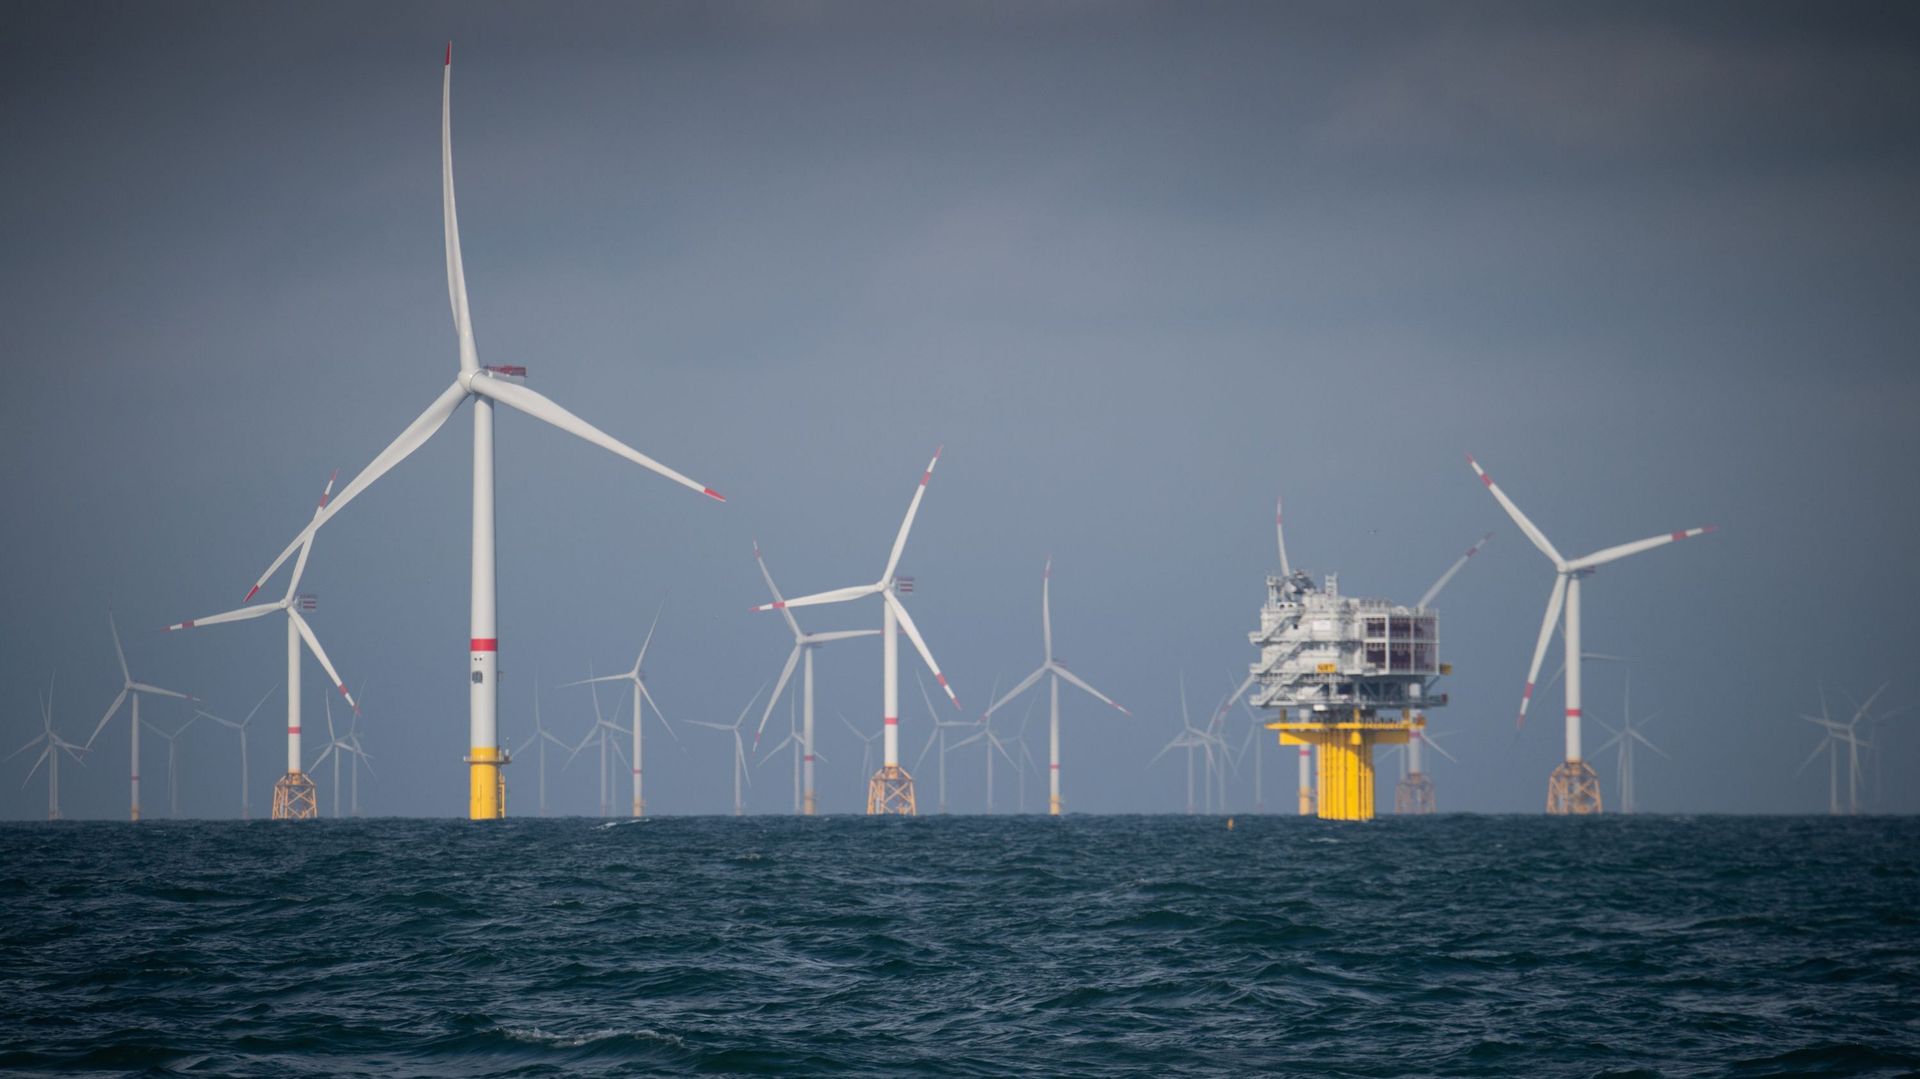 Les pêcheurs européens s'inquiètent des parcs éoliens offshore